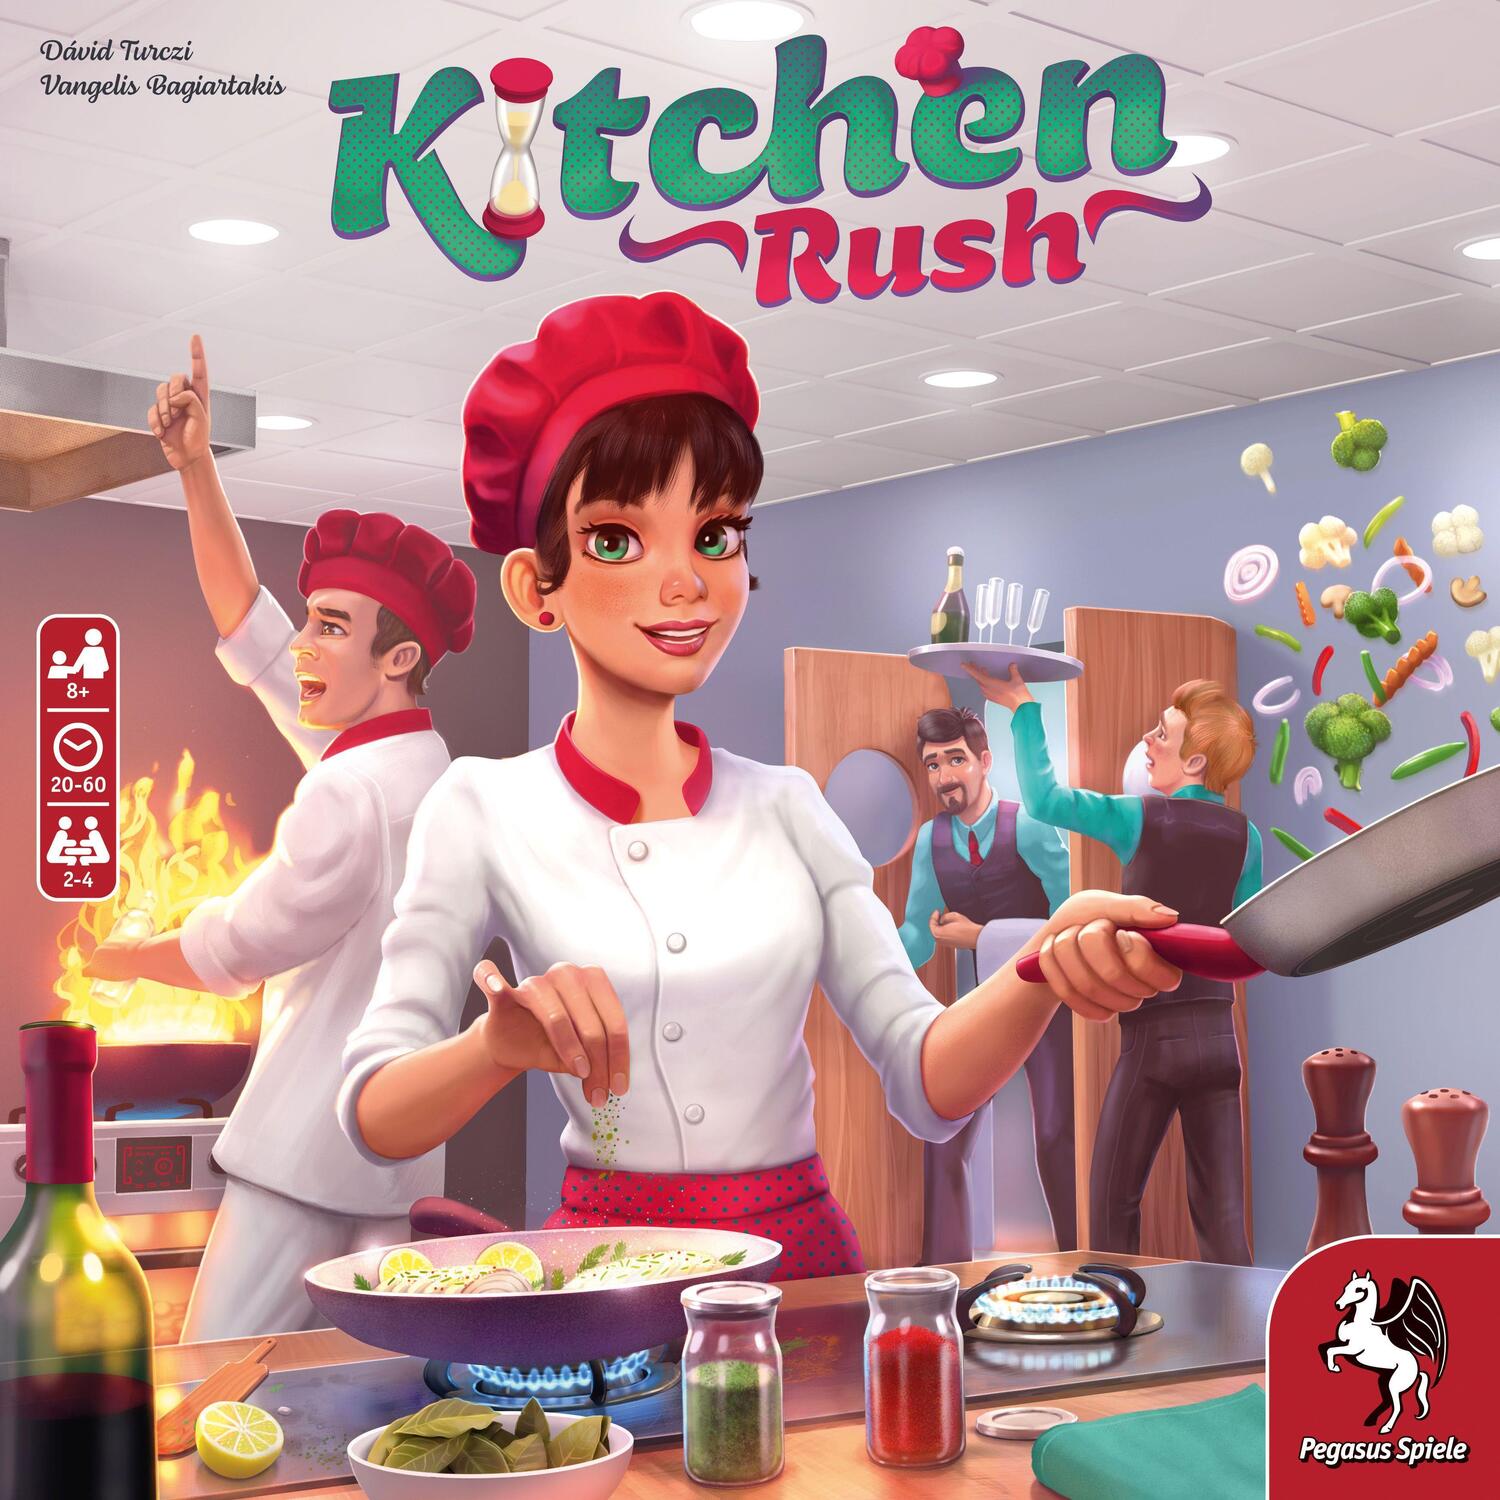 Bild: 4250231726477 | Kitchen Rush (English Edition) | Spiel | Englisch | 2020 | Pegasus